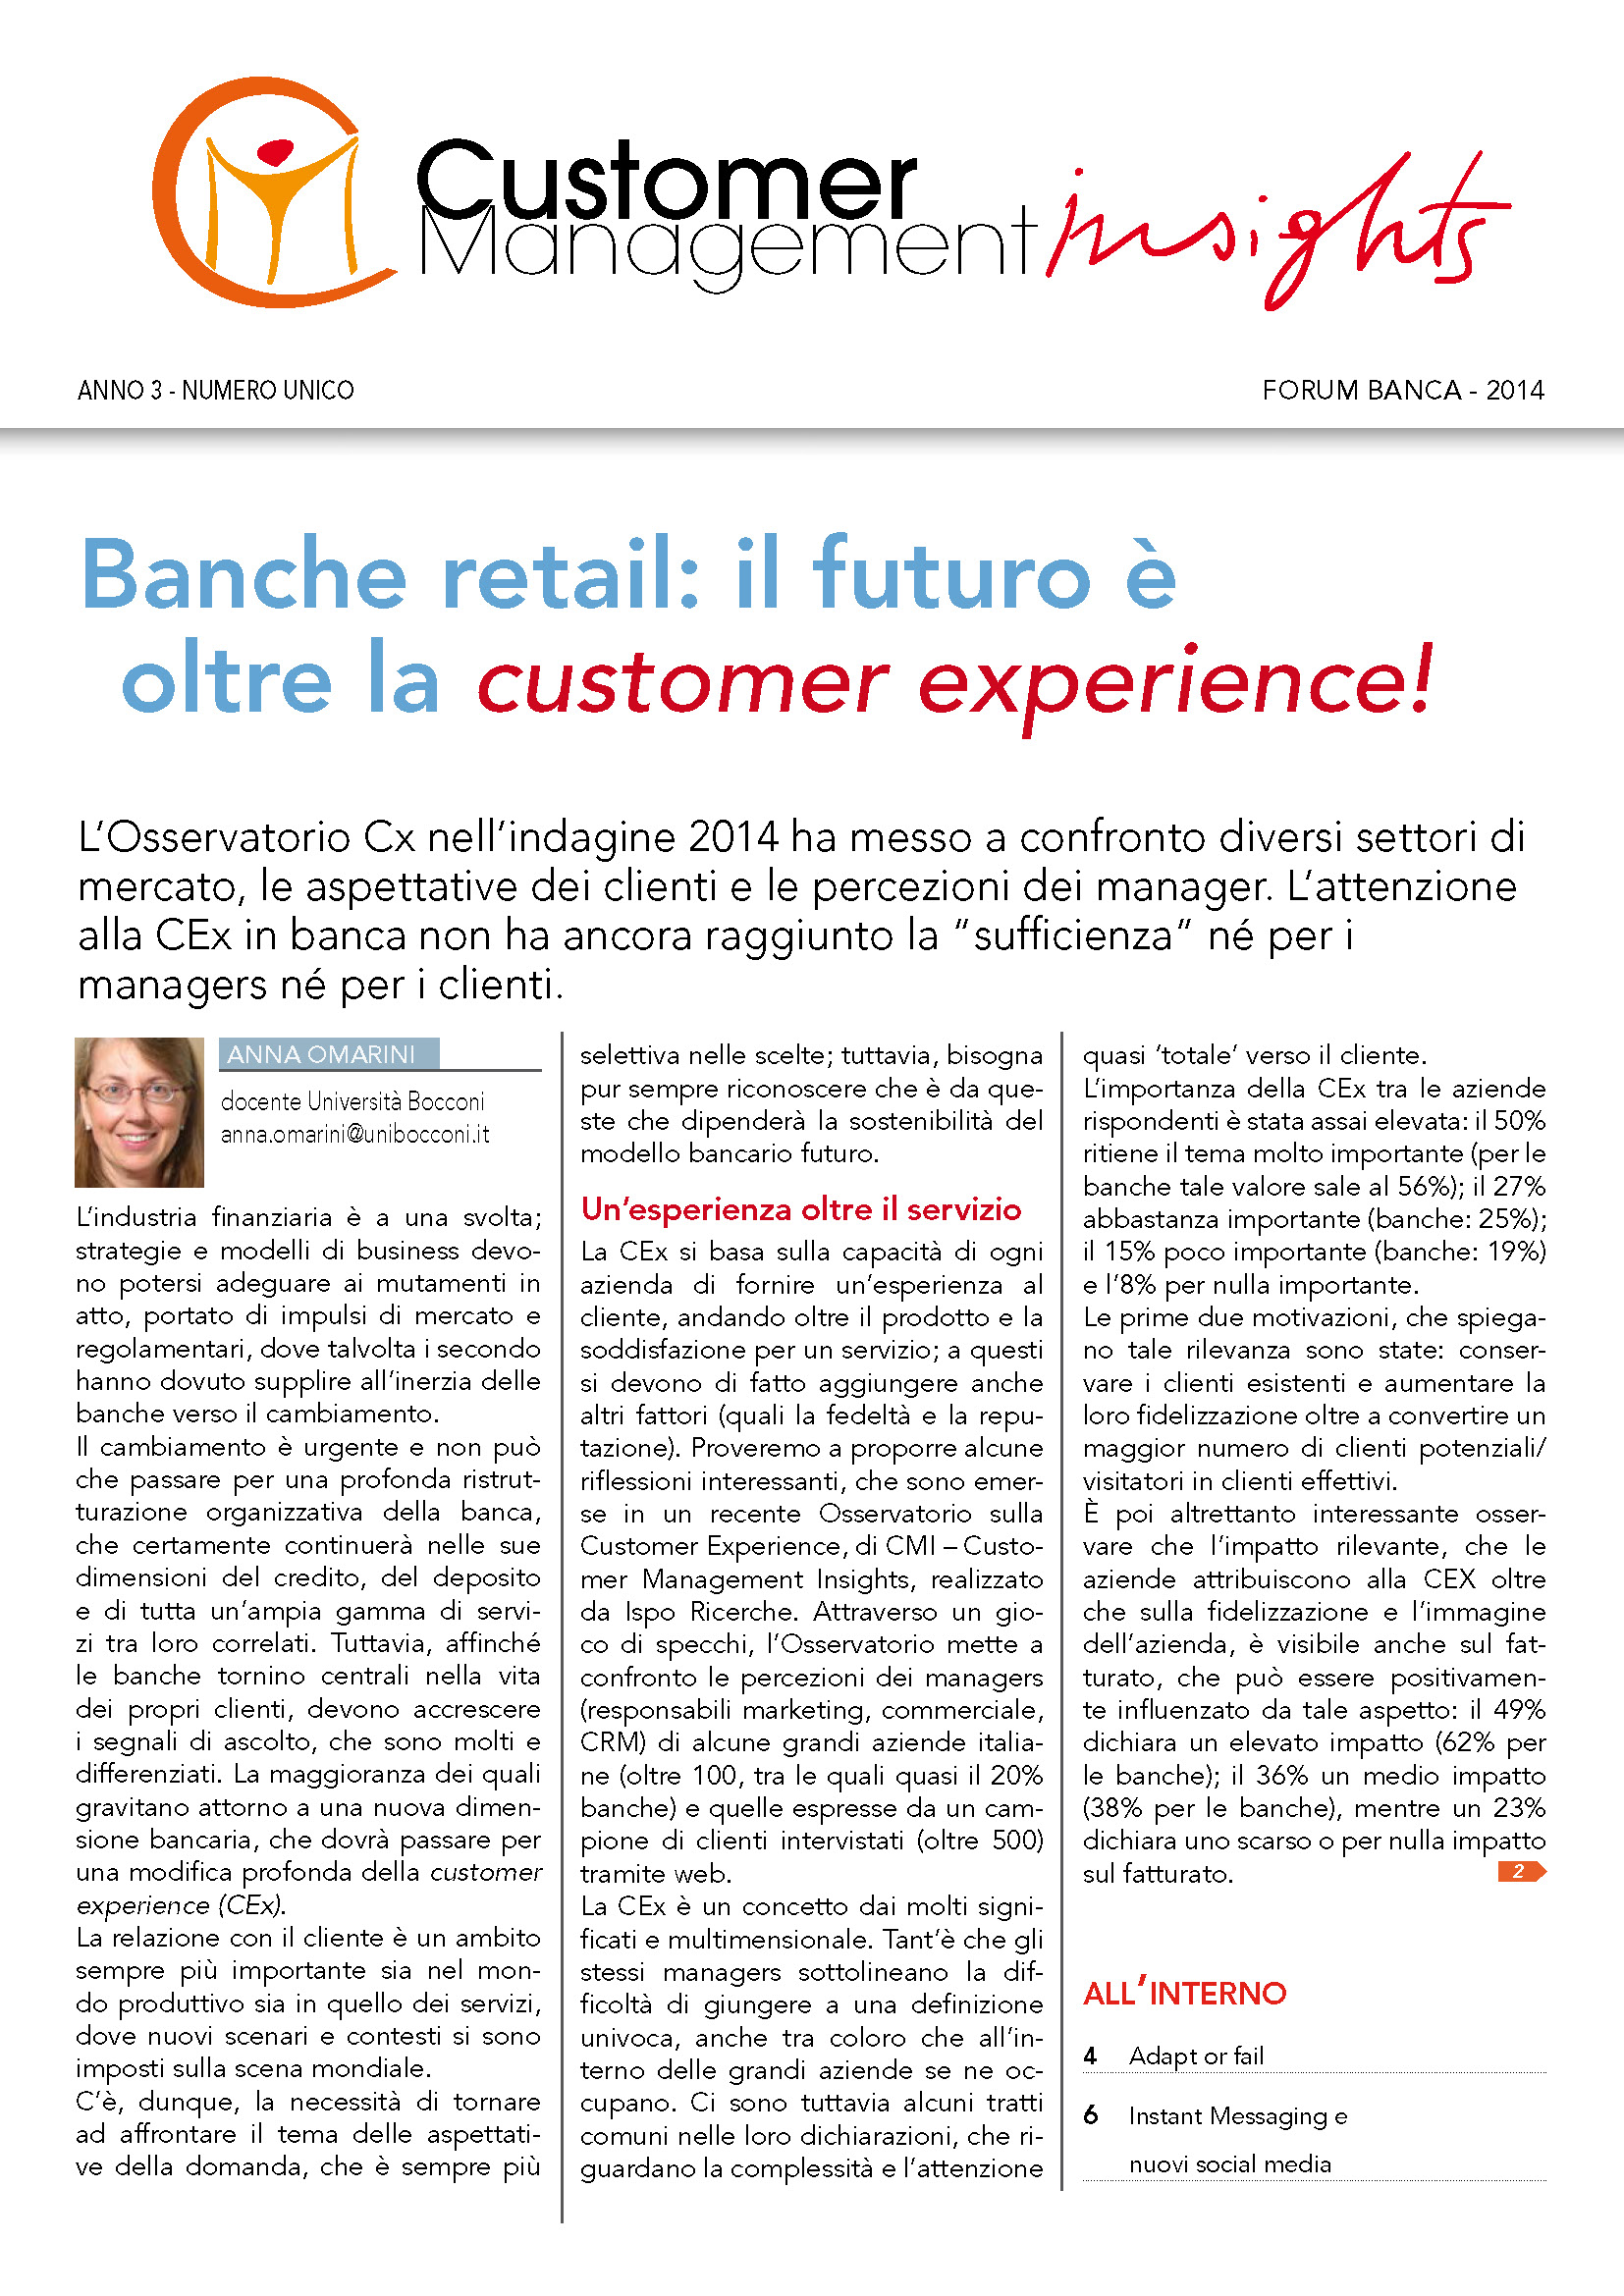 Banche retail: il futuro è oltre la customer experience